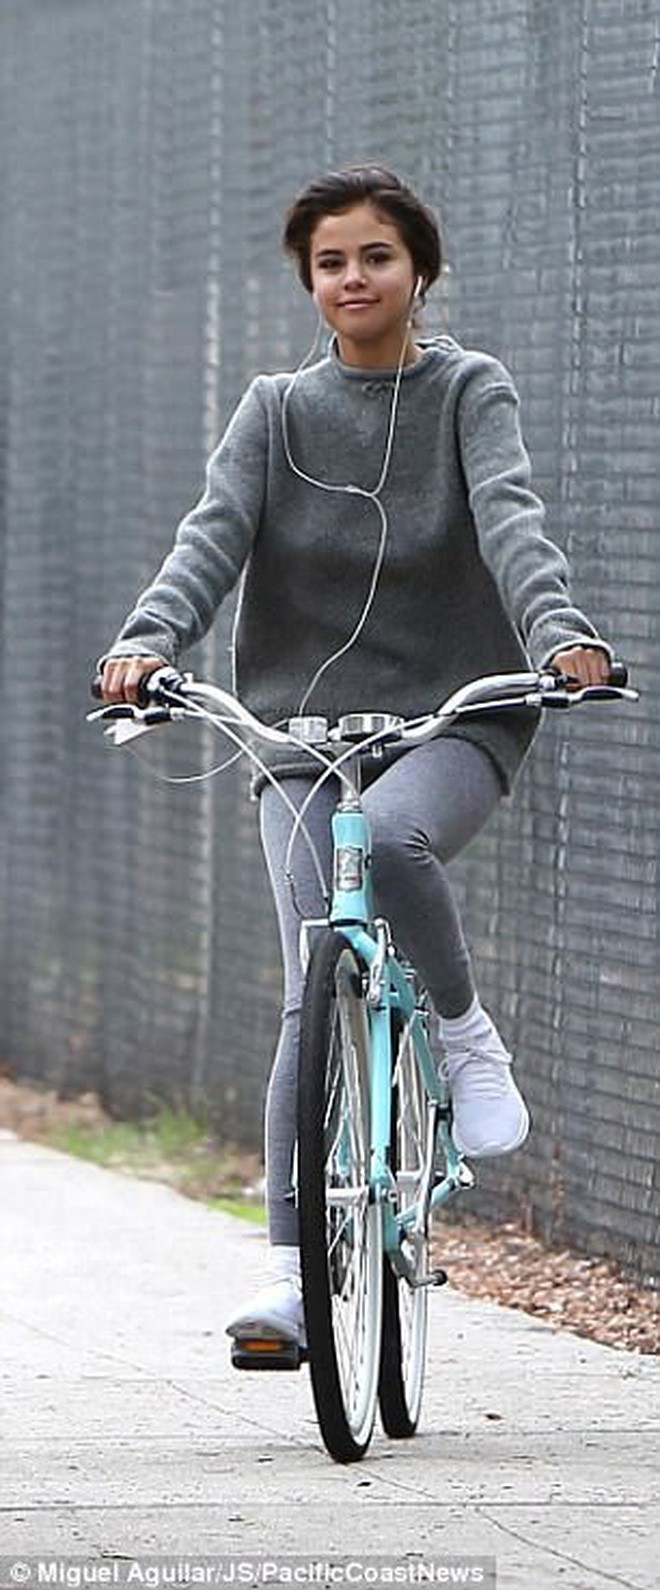 Hẹn hò đạp xe cùng nhau, Justin - Selena đẹp đôi và dễ thương như đang quay một bộ phim tình cảm - Ảnh 8.